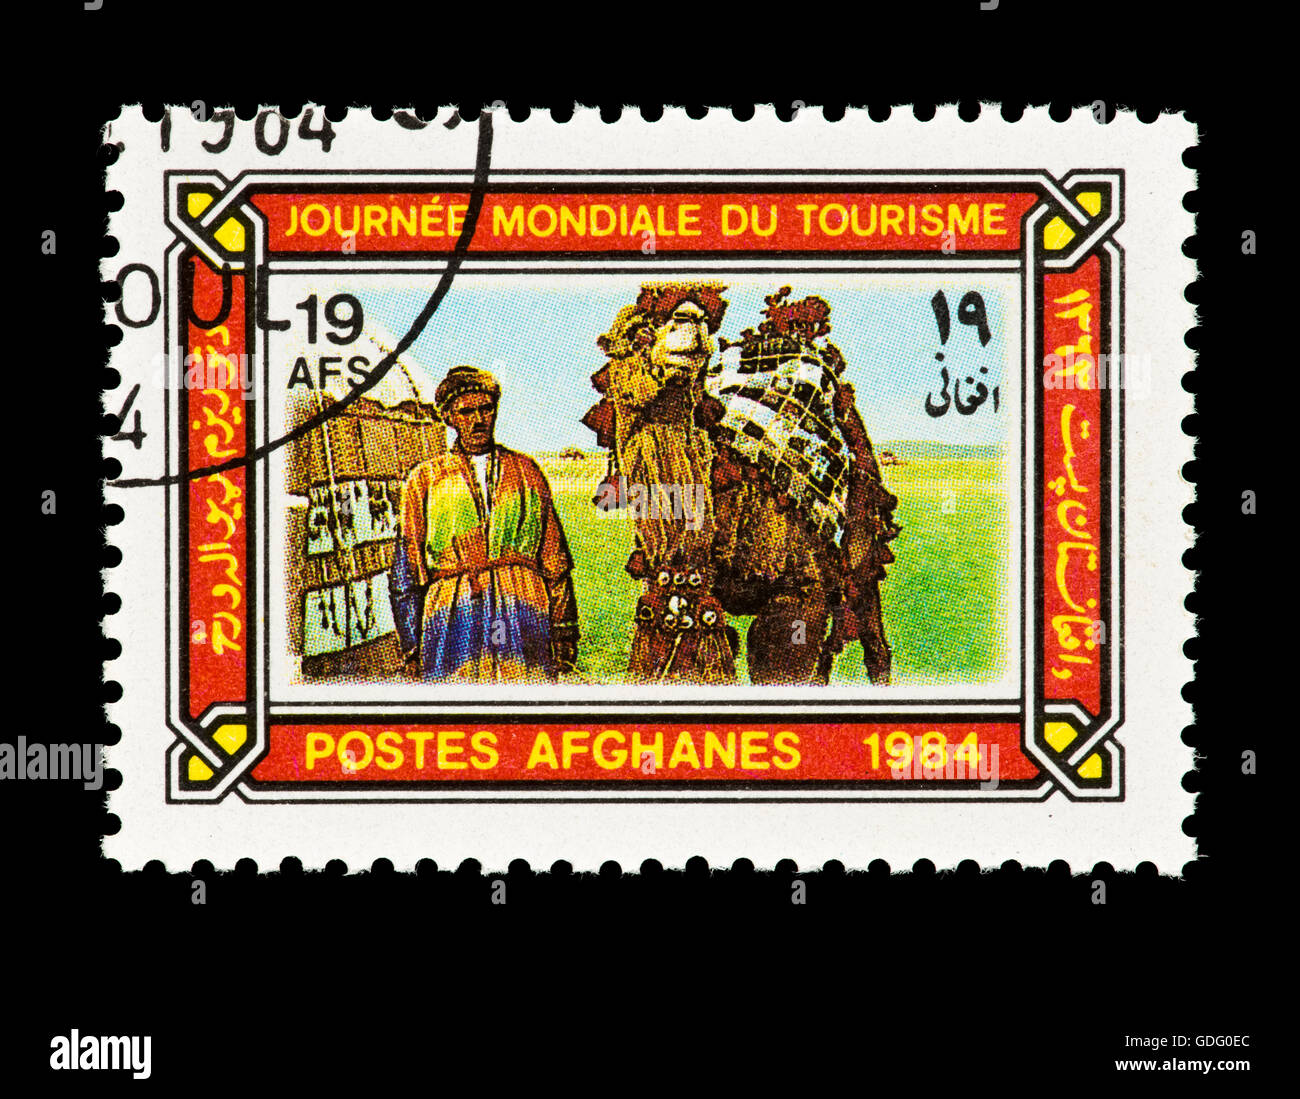 Francobollo da Afghanistan raffigurante un cammello driver, tenda e cammelli, rilasciata in occasione della Giornata Mondiale del Turismo (1984) Foto Stock